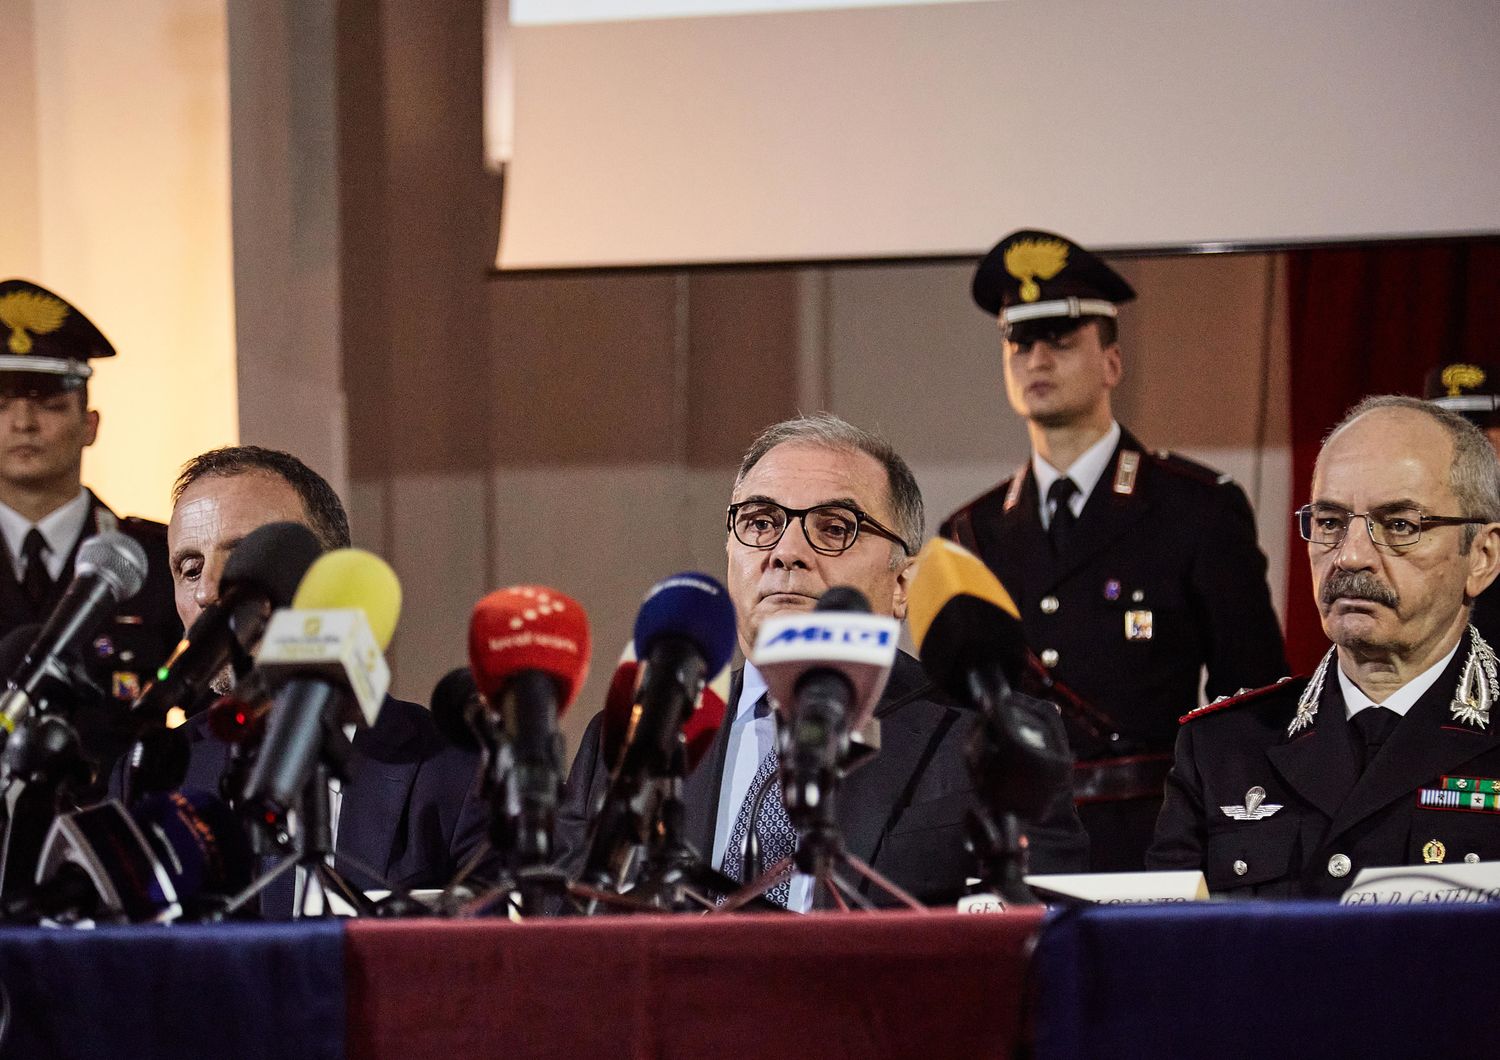 &nbsp;La conferenza stampa organizzata dai carabinieri dopo l'arresto di Messina Denaro